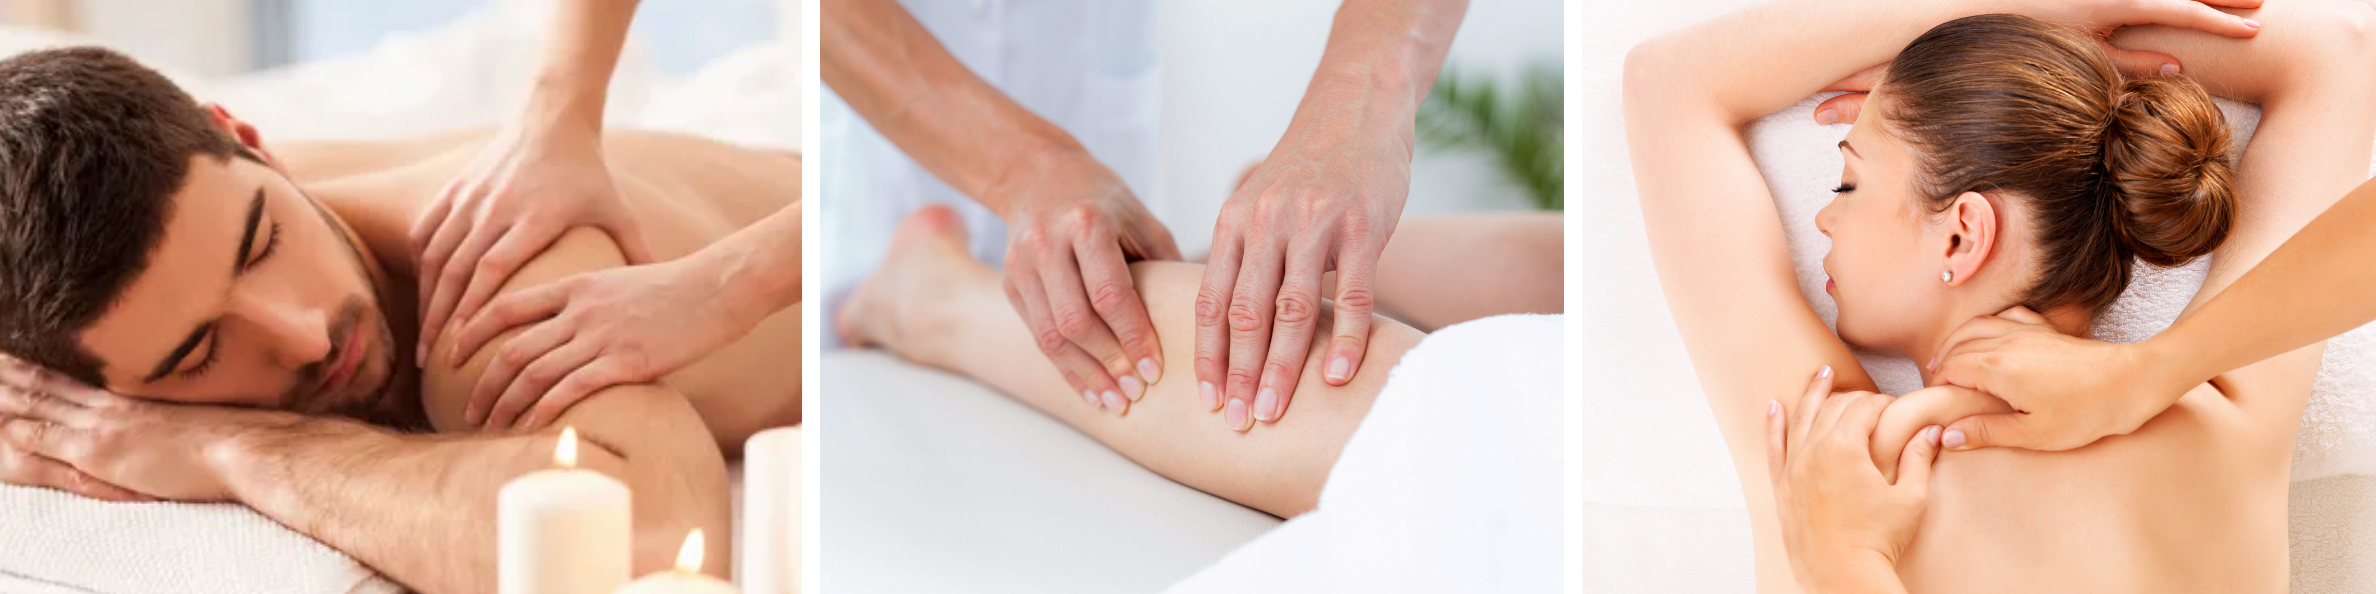 Therapeutic Massage therapy, Therapeutic Massage